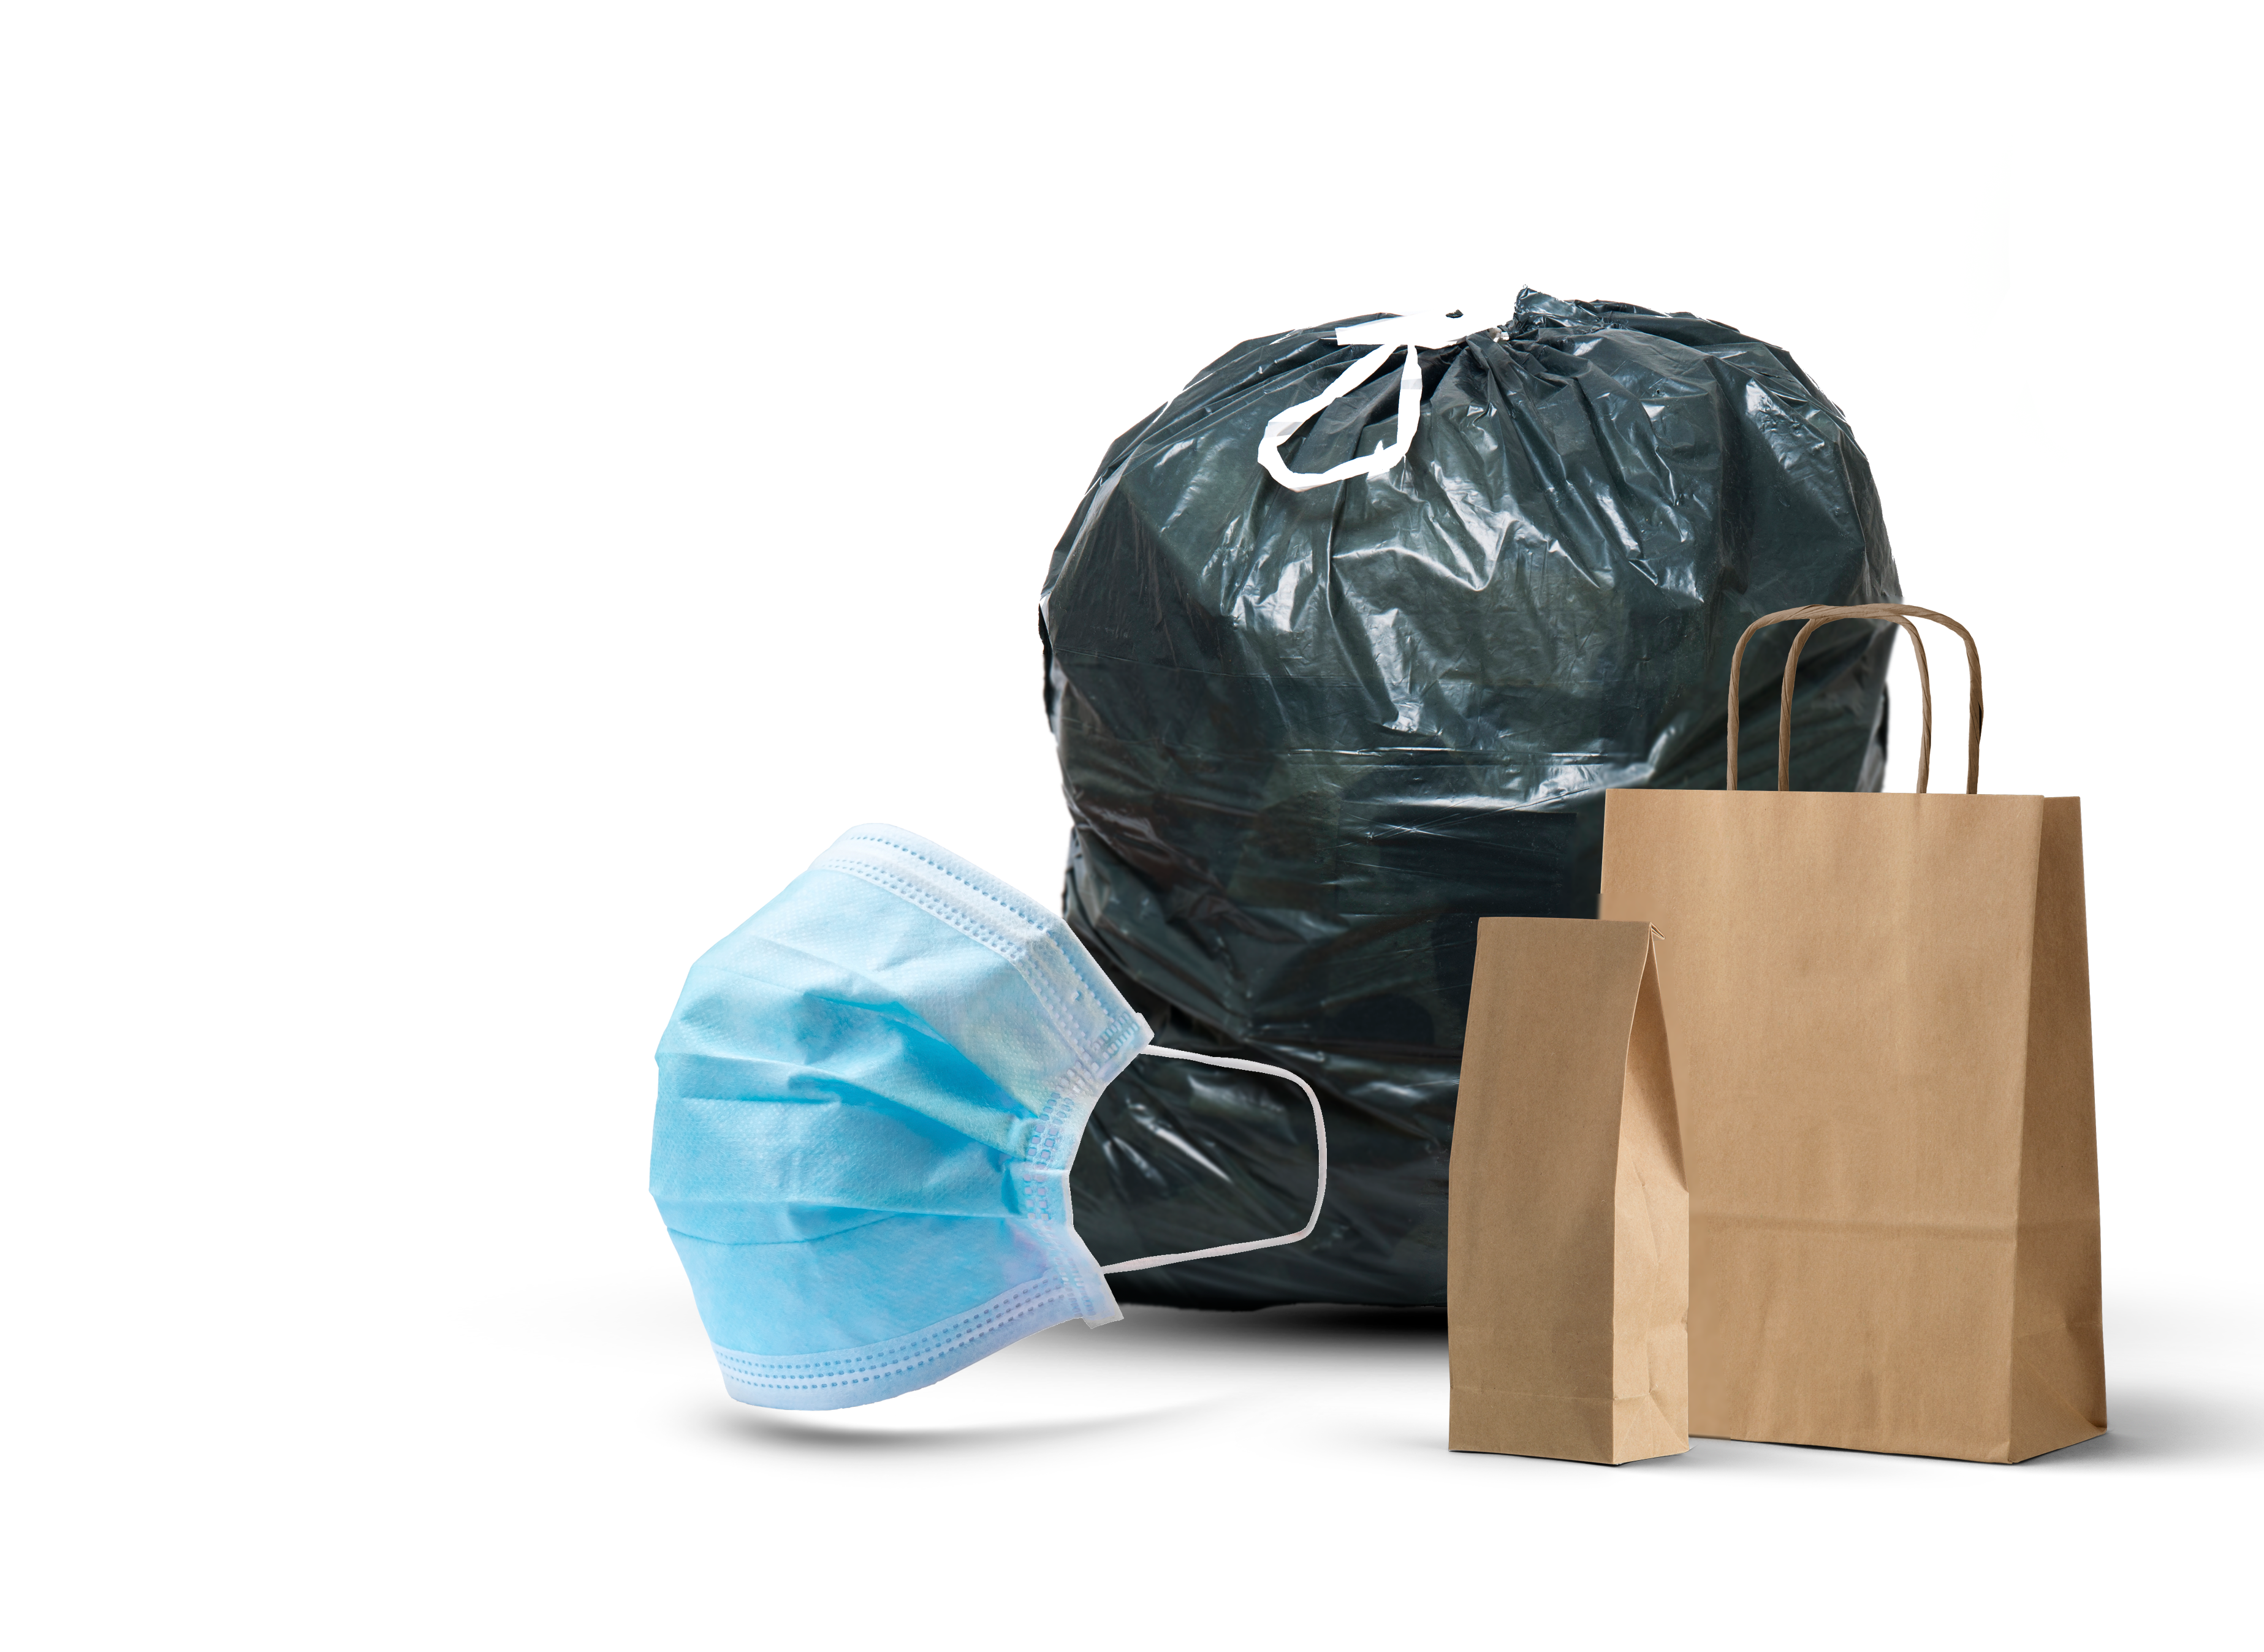 Vente en gros de produits professionnels : emballages, sacs, produits hygiéniques, d’entretien, de nettoyage et d’essuyage.